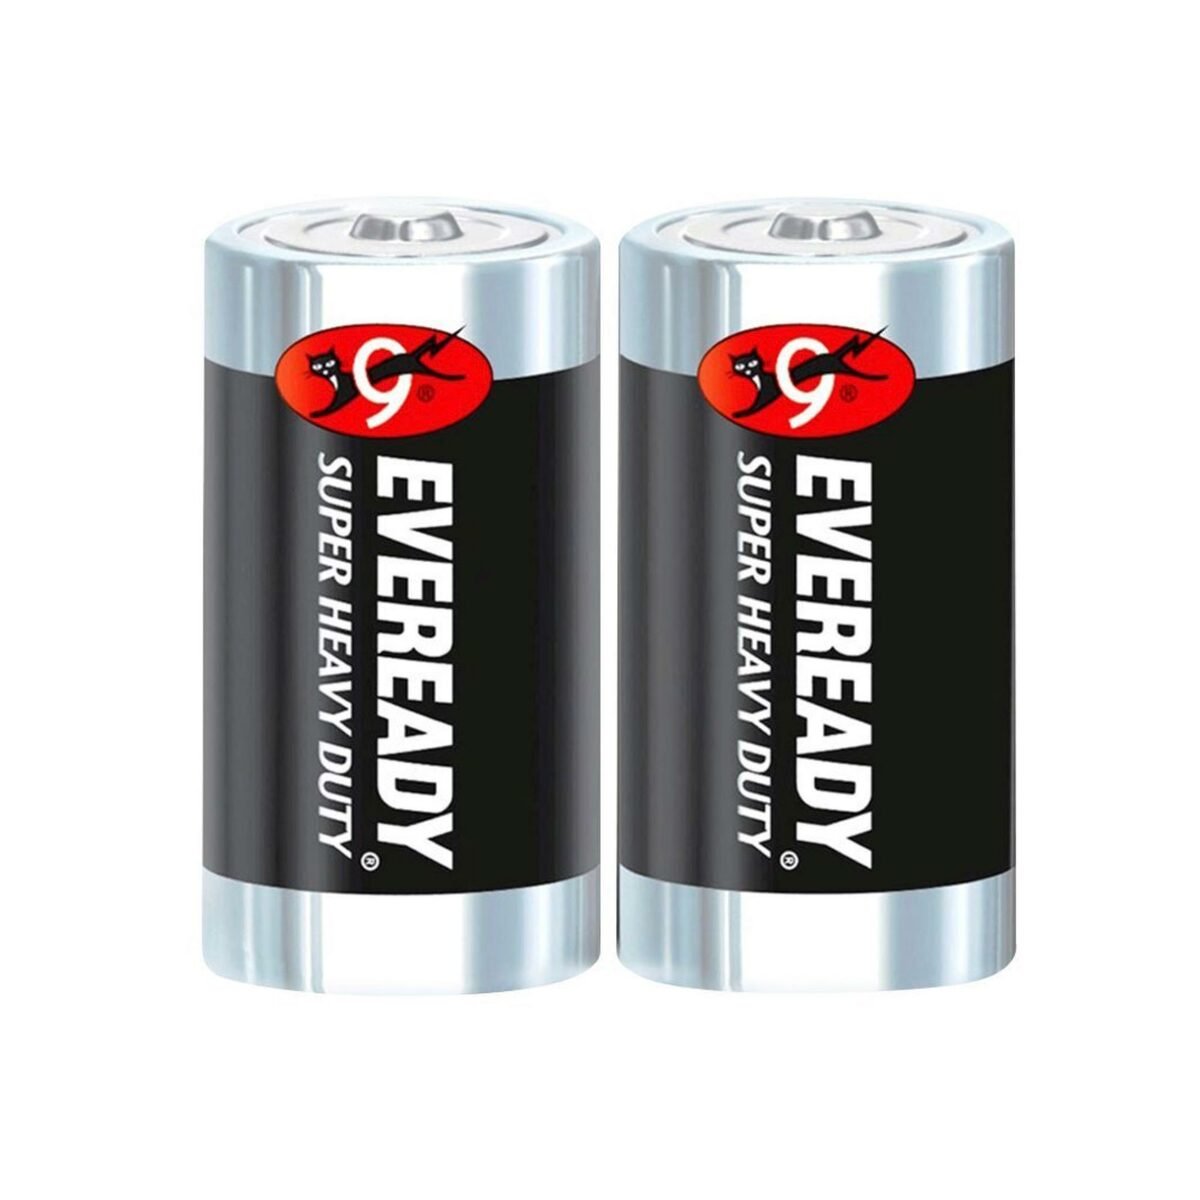 Eveready Super Heavy Duty D Size(R20) Carbon Zinc Batteries 2pcs